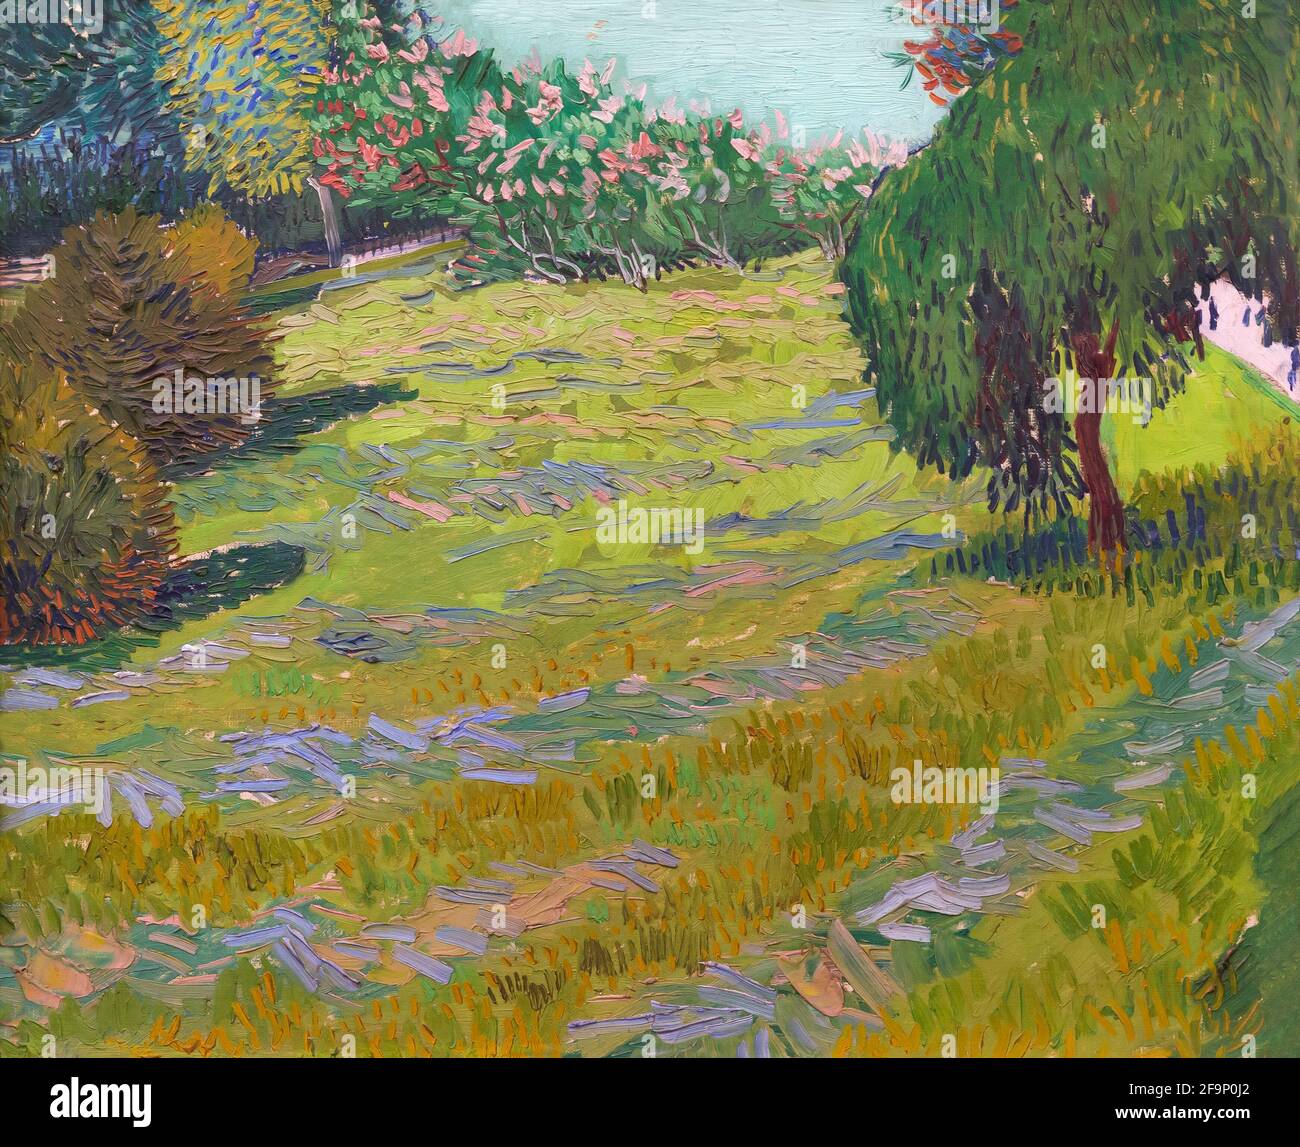 Garten mit weinender Weide, sonniger Rasen in einem öffentlichen Park, Arles, Vincent van Gogh, 1888, Stockfoto